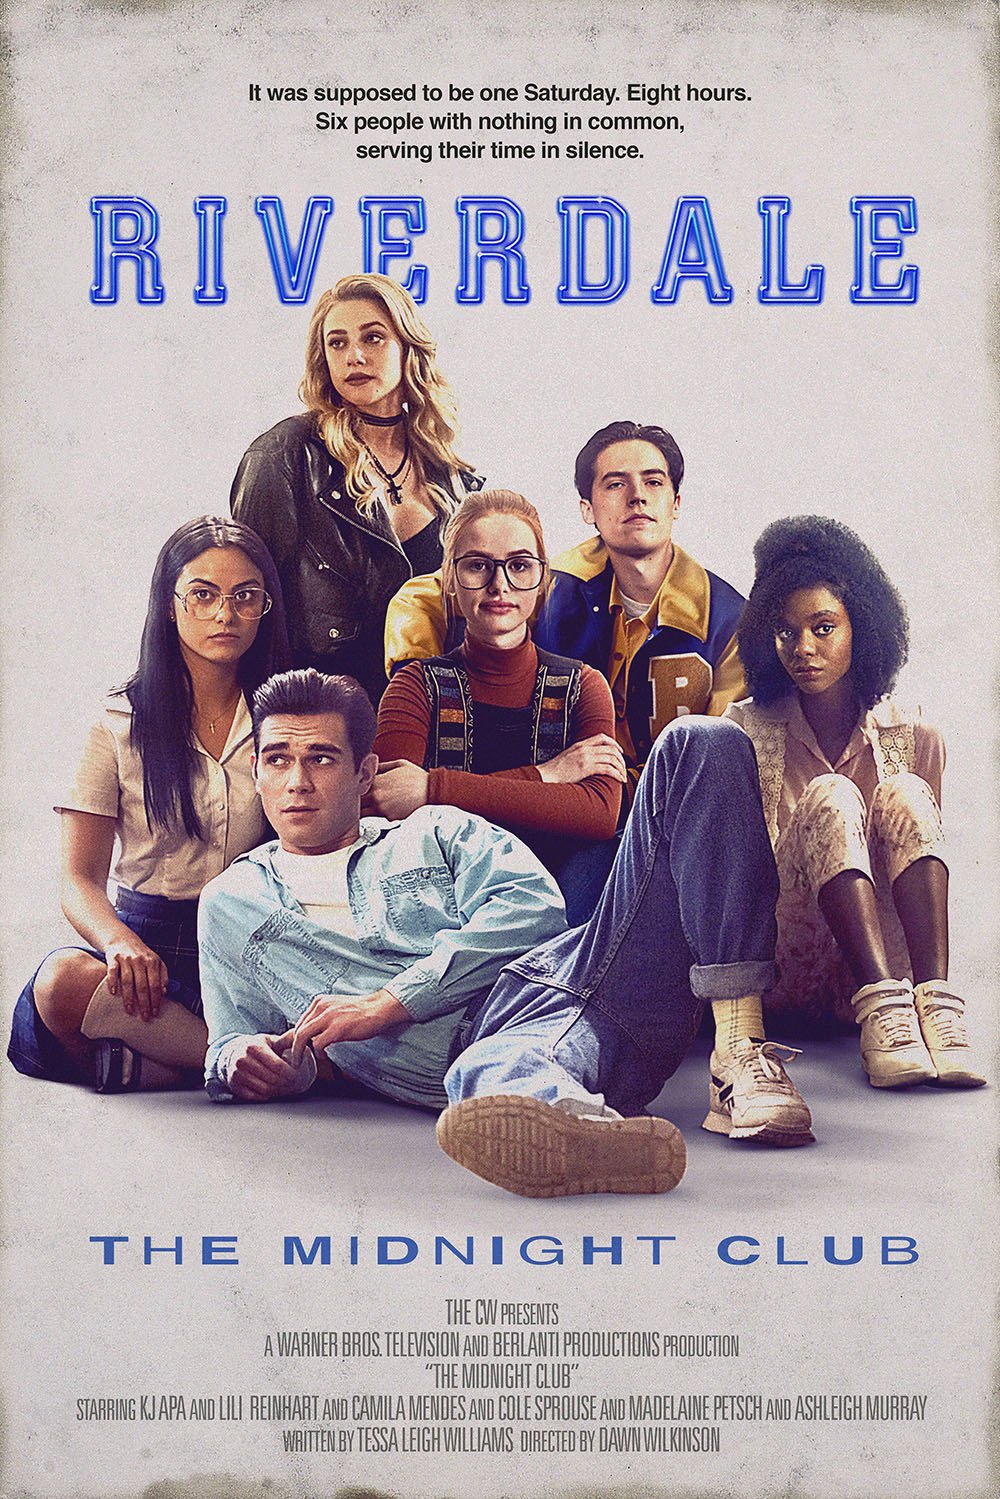 L'omaggio di Riverdale a Breakfast Club